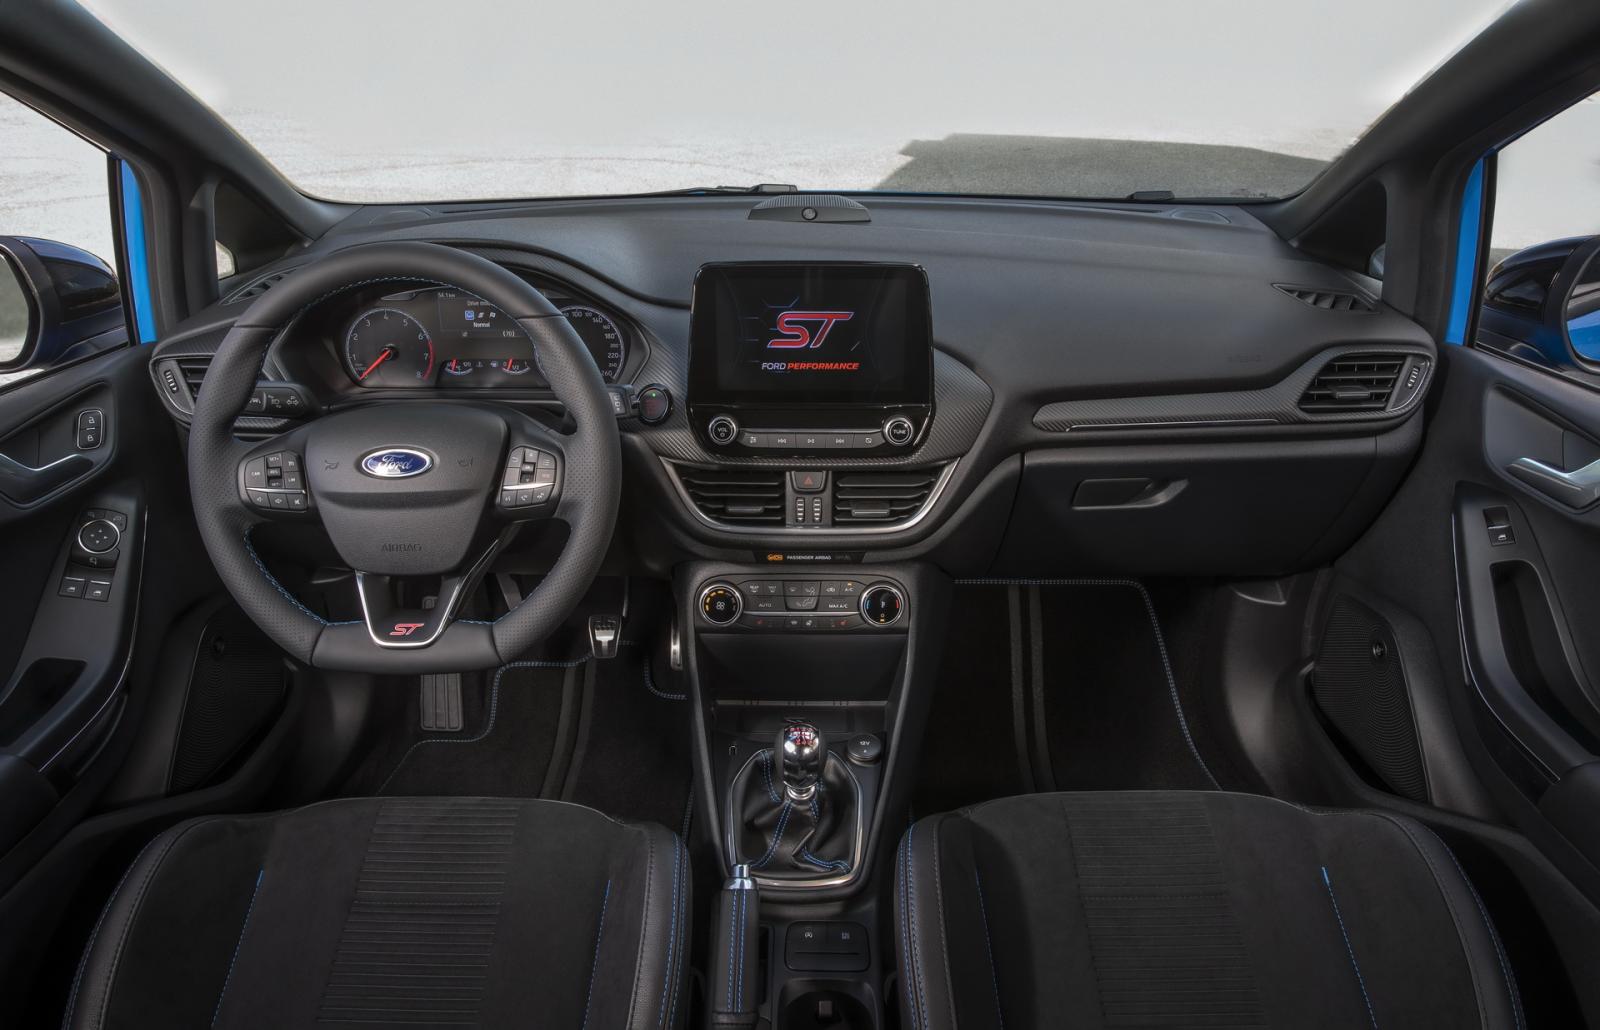 Ford Fiesta ST Edition hứa hẹn cung cấp trải nghiệm lái đỉnh cao.